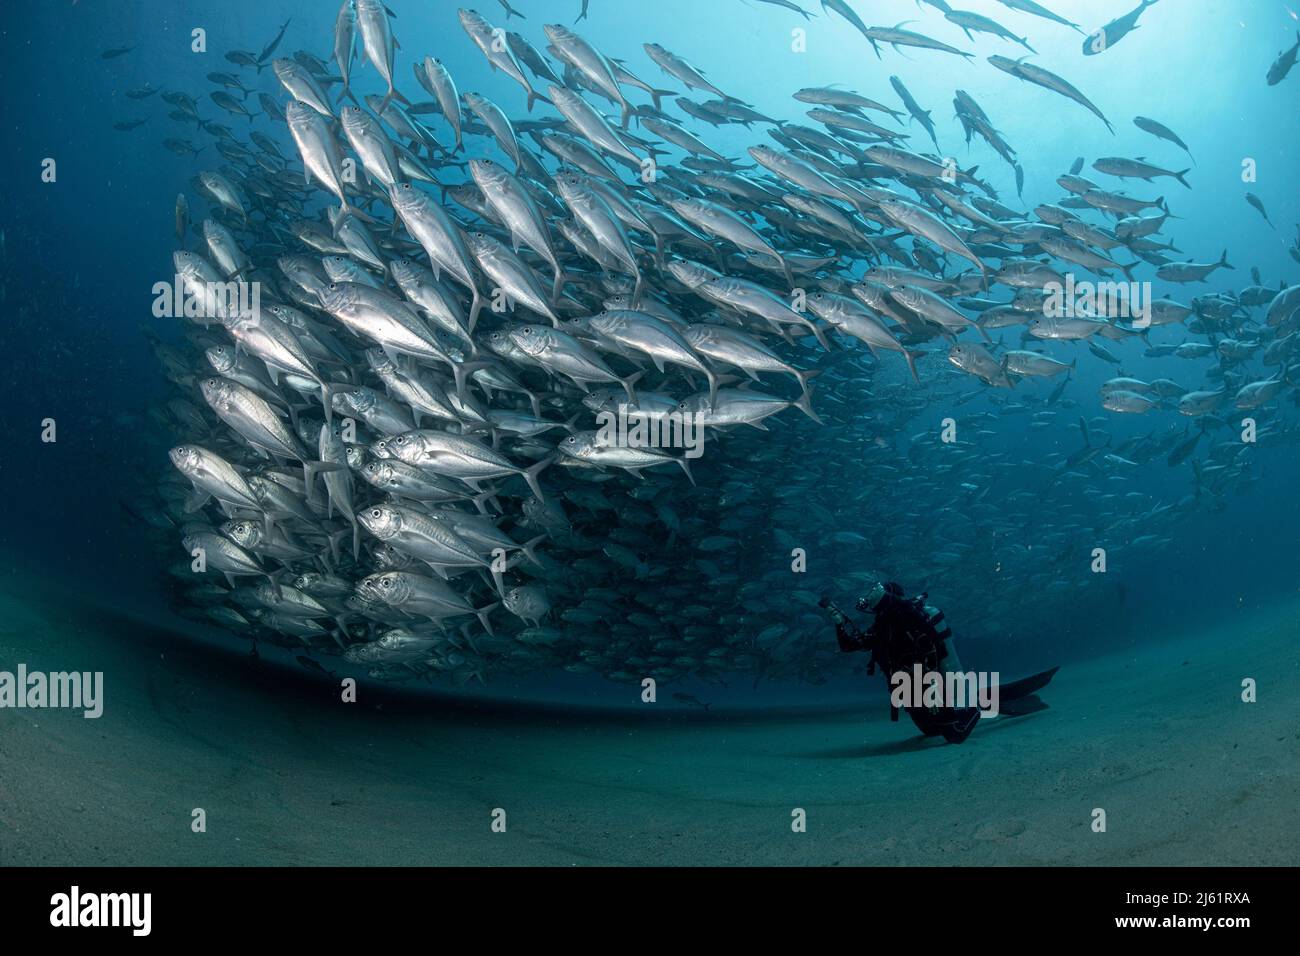 Ein Taucher bewundert in Ehrfurcht die große Ansammlung von Buchsenfischen in den Gewässern des Cabo Pulmo Marine National Park, wo die Biomasse der Meere exponentiell zugenommen hat Stockfoto